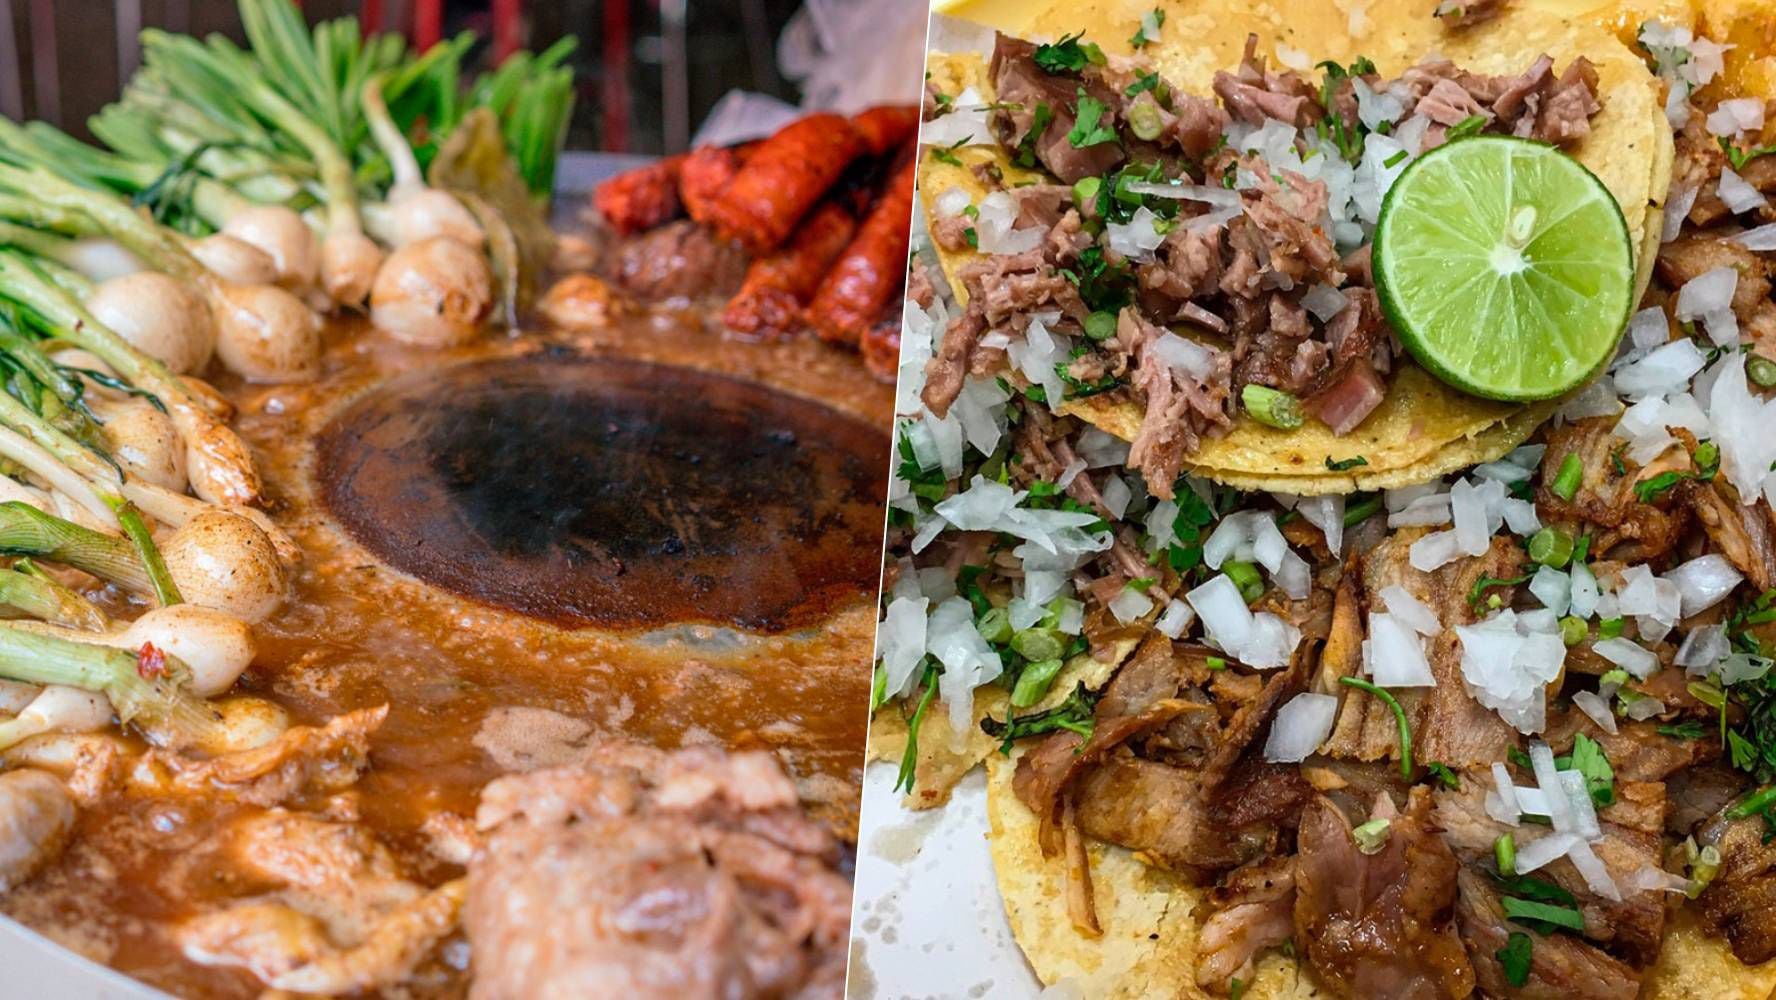 Los tacos de suadero son de los más populares en México. (Foto: Shutterstock).